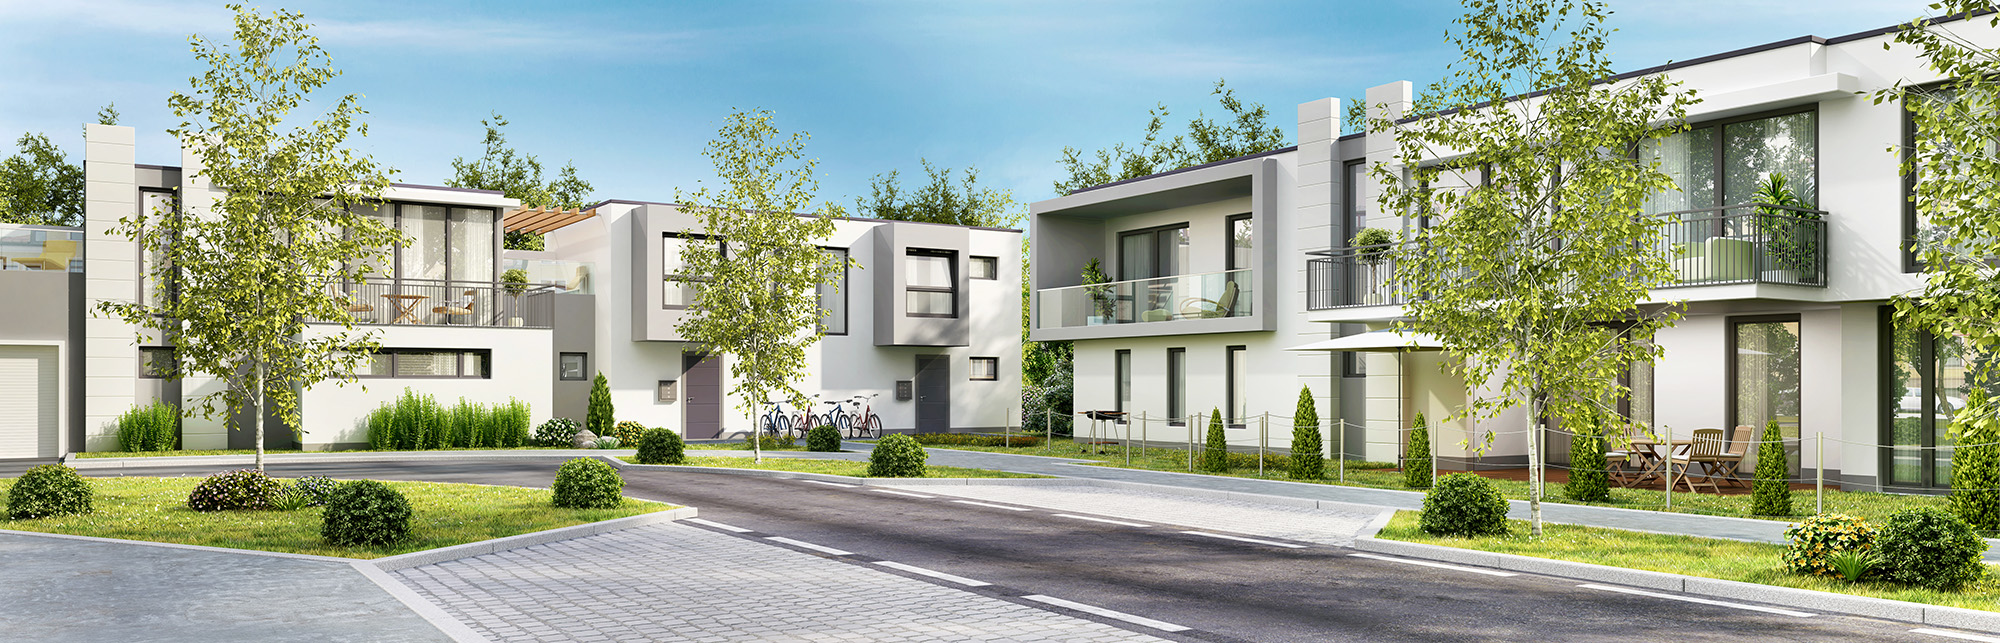 Багатоквартирні будинки Kermi – найкраща якість і сучасна функціональність.